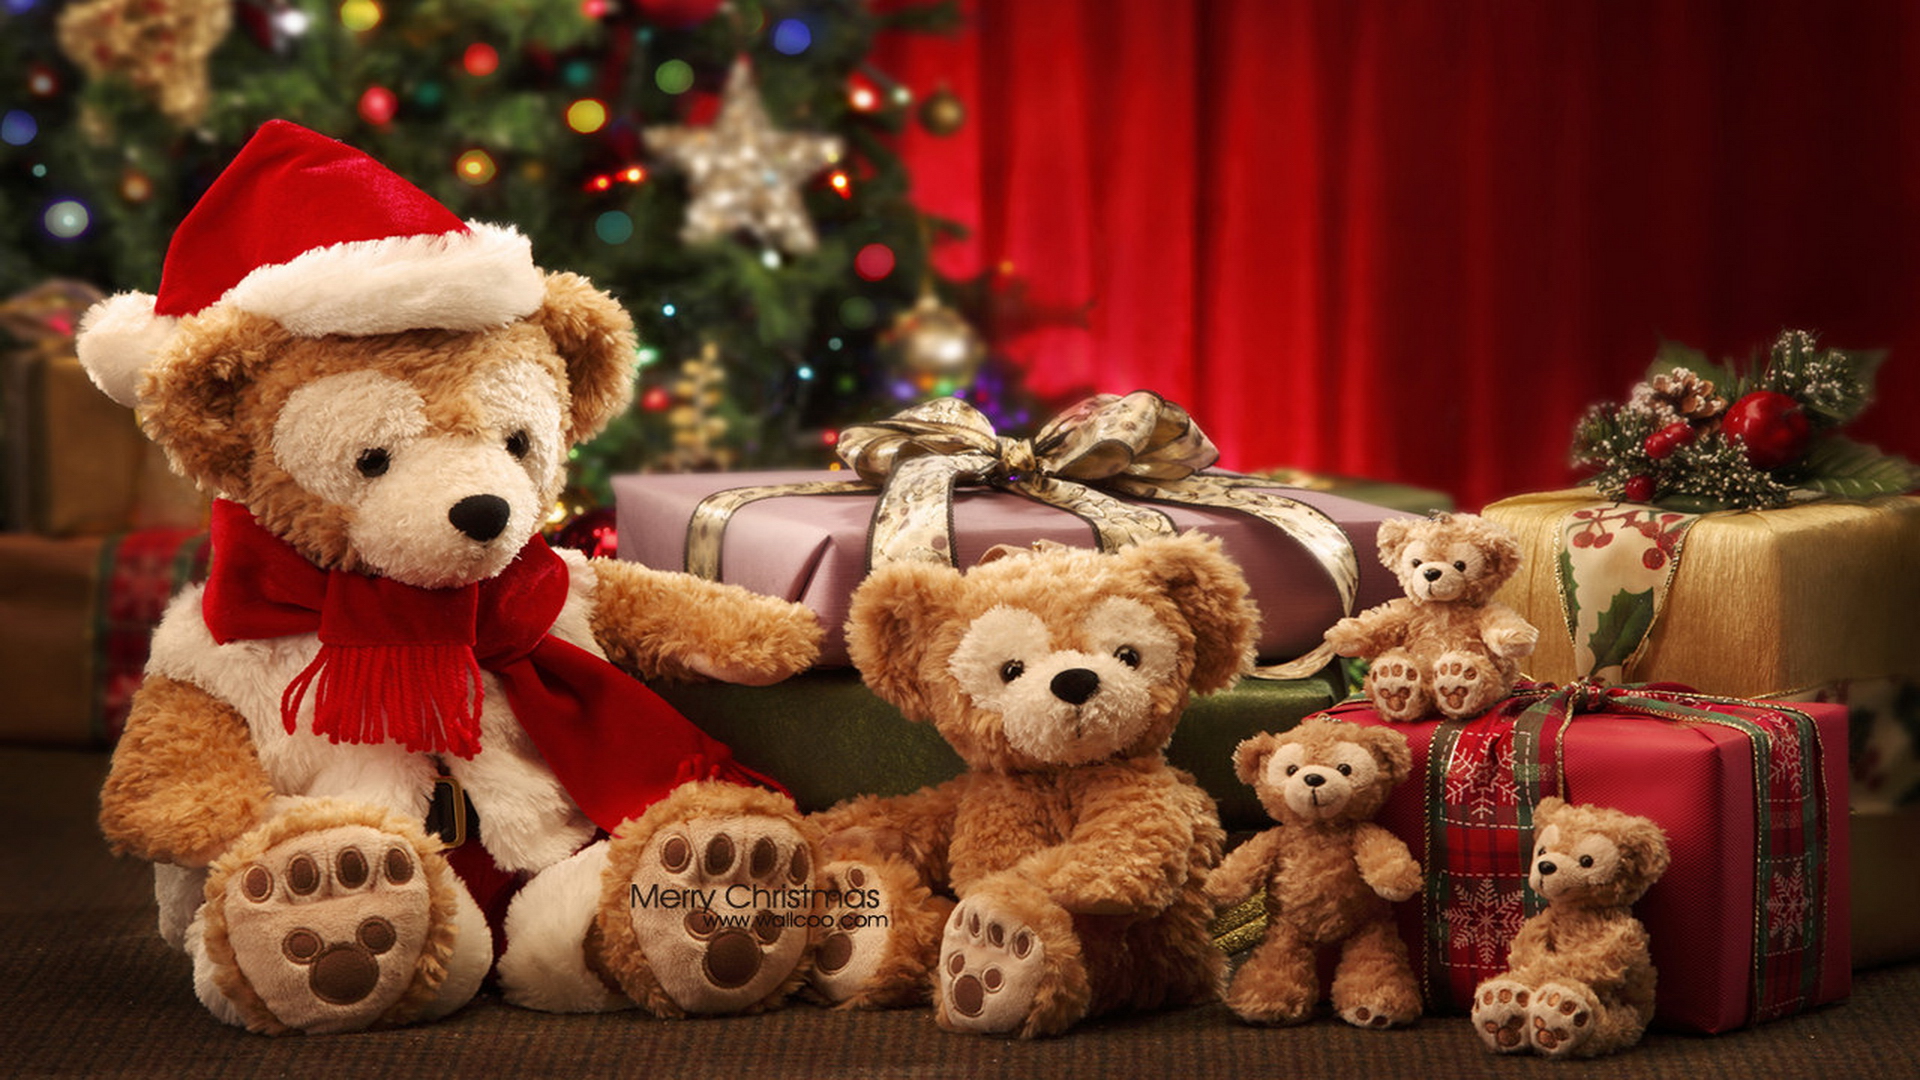 かわいいメリークリスマスの壁紙,テディベア,ぬいぐるみ,おもちゃ,ぬいぐるみ,クリスマス・イブ